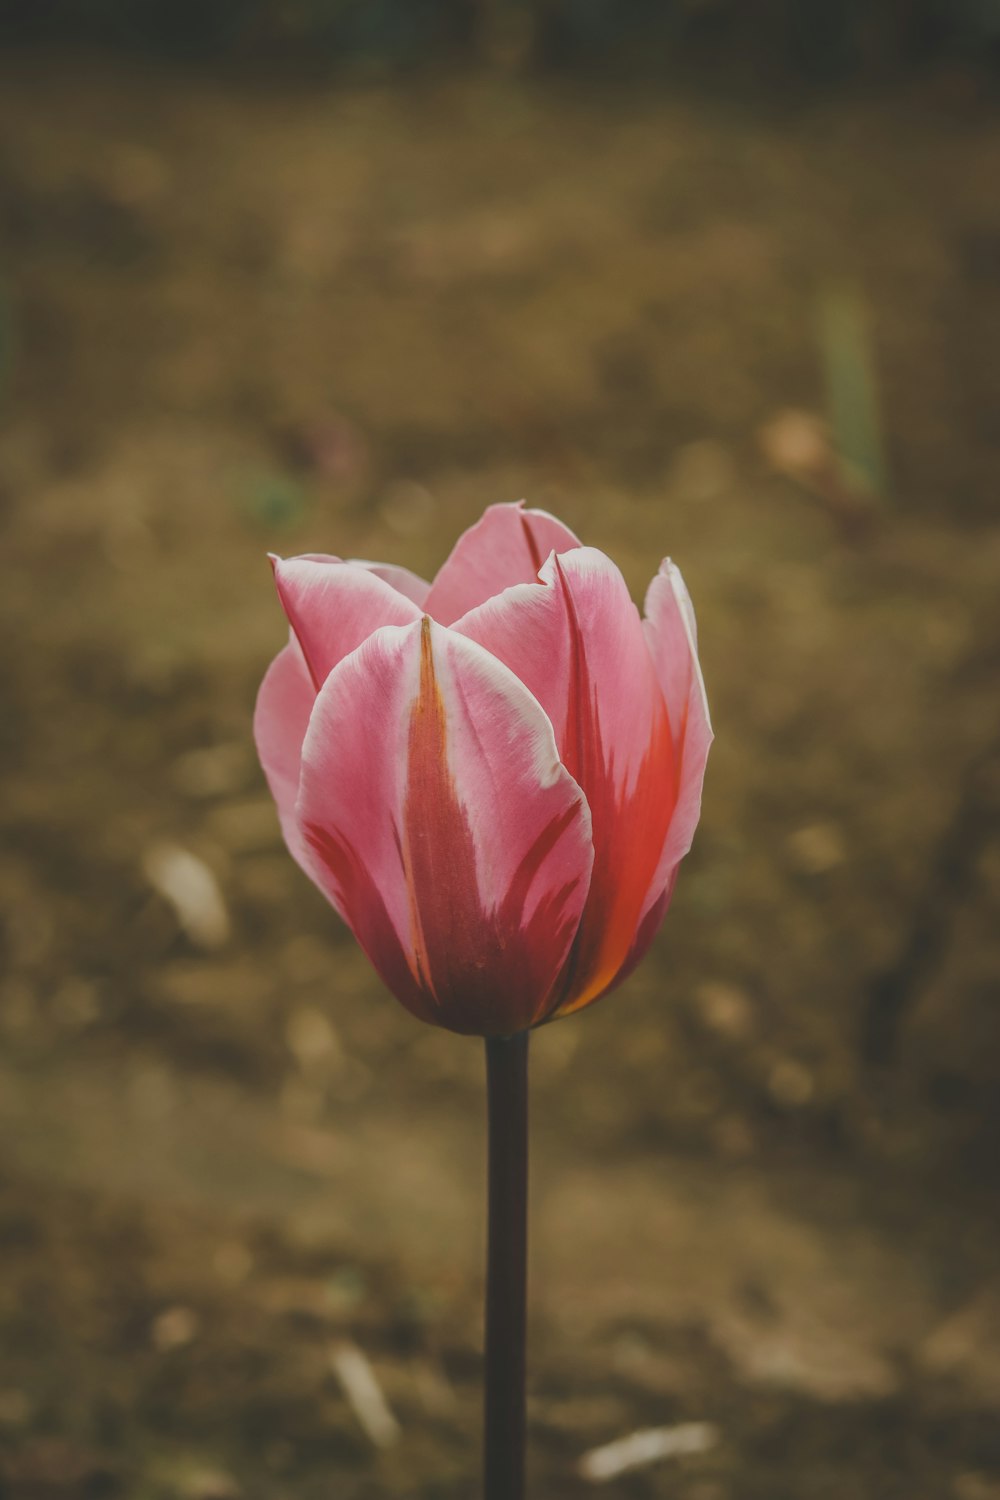 une seule tulipe rose au milieu d’un champ